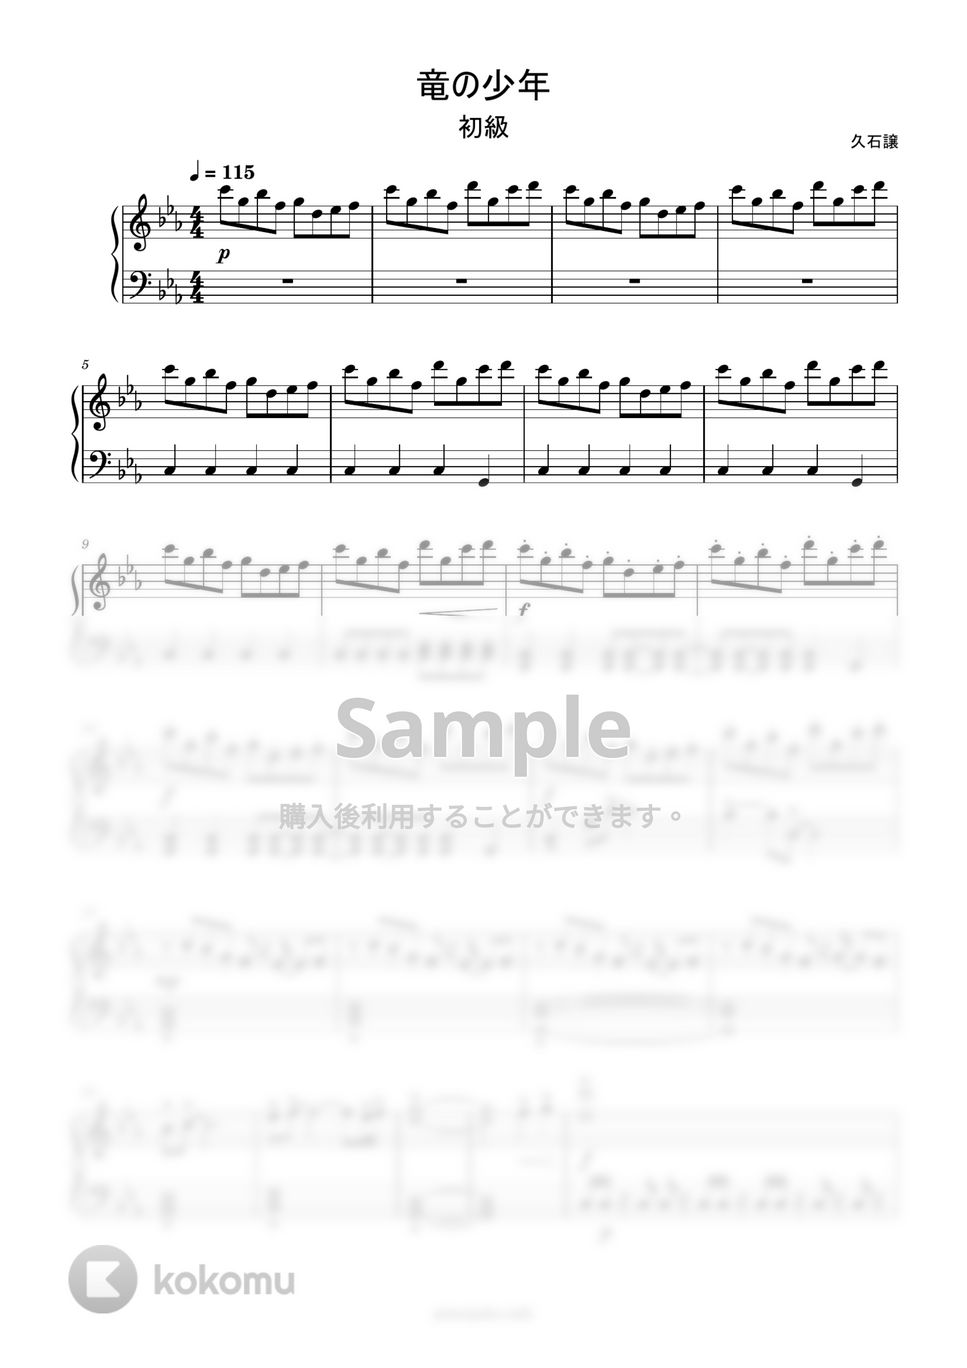 千と千尋の神隠し - 竜の少年 (簡単楽譜) by ピアノ塾